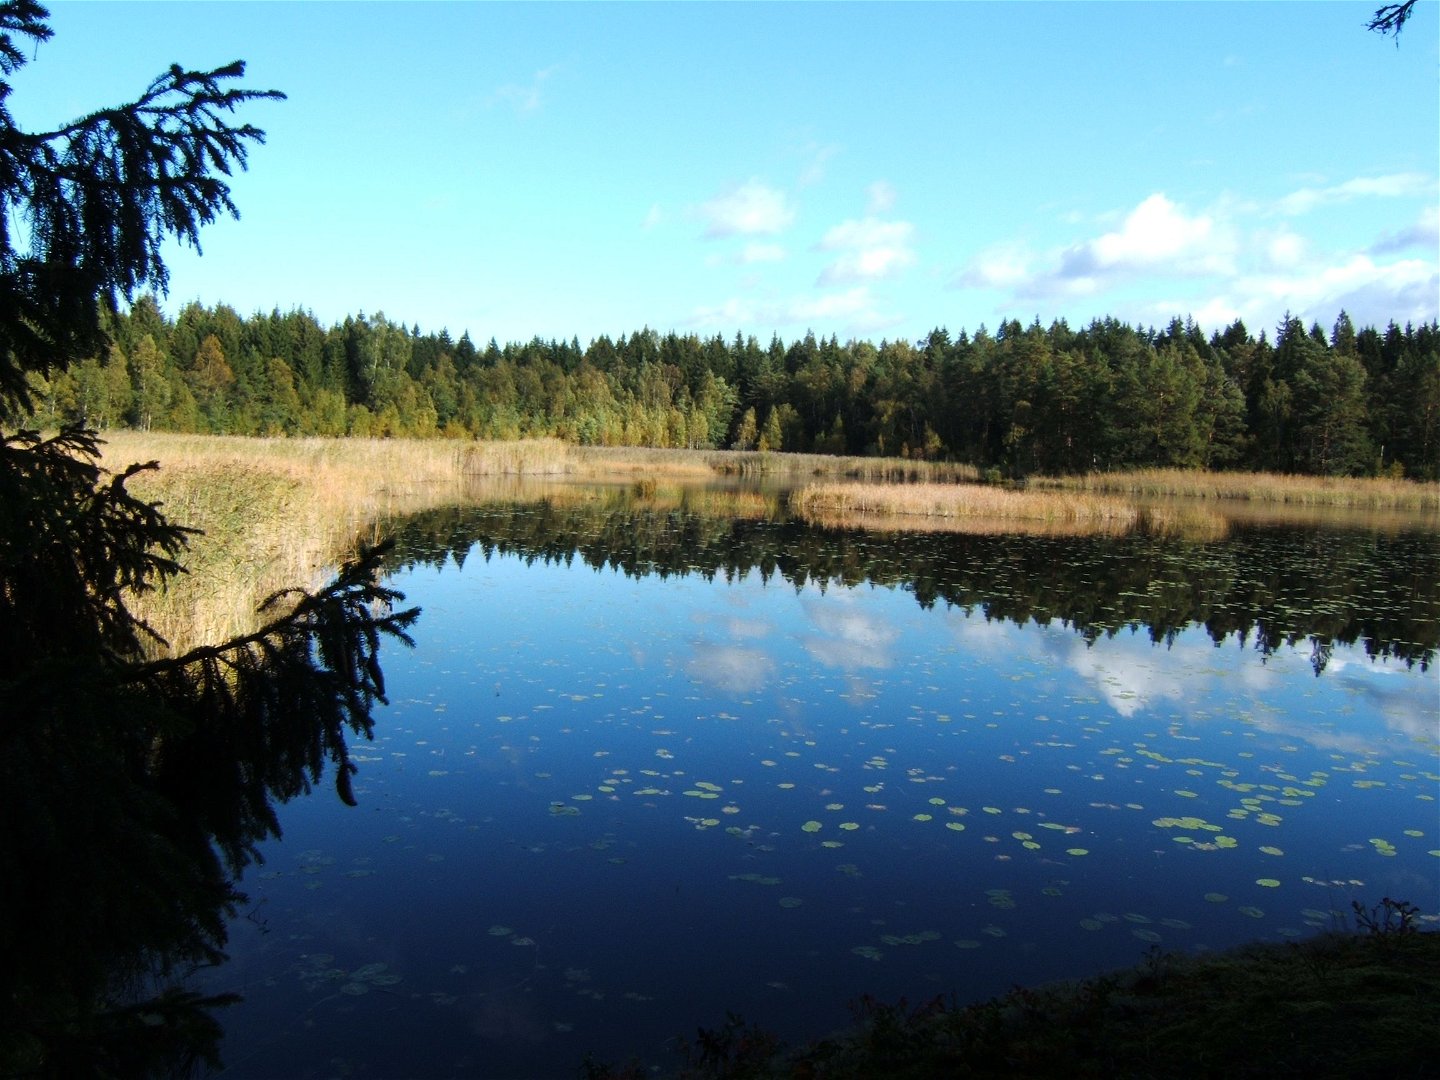 En sjö med vass i kanterna och skog i bakgrunden.